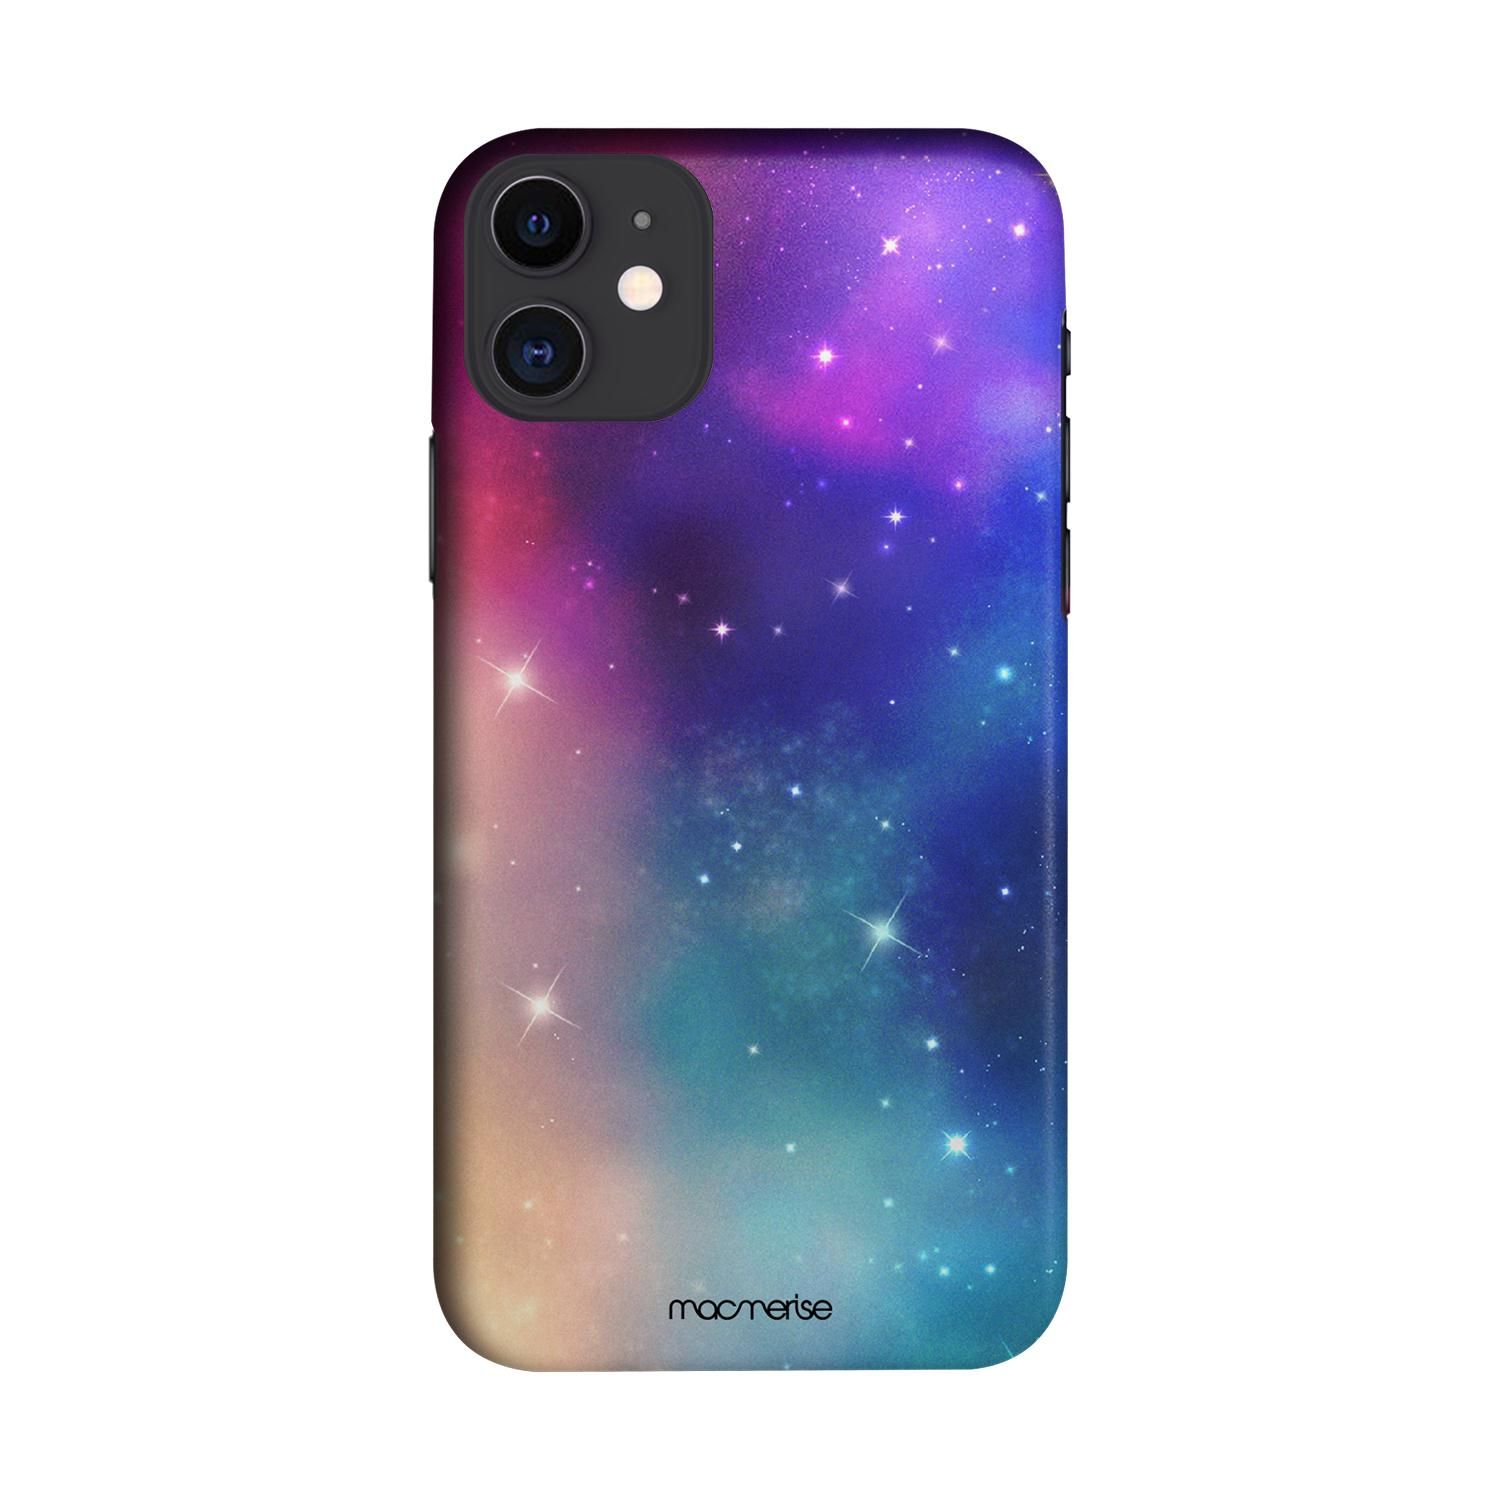 Buy Sky Full of Stars - Sleek Phone Case for iPhone 11 Online